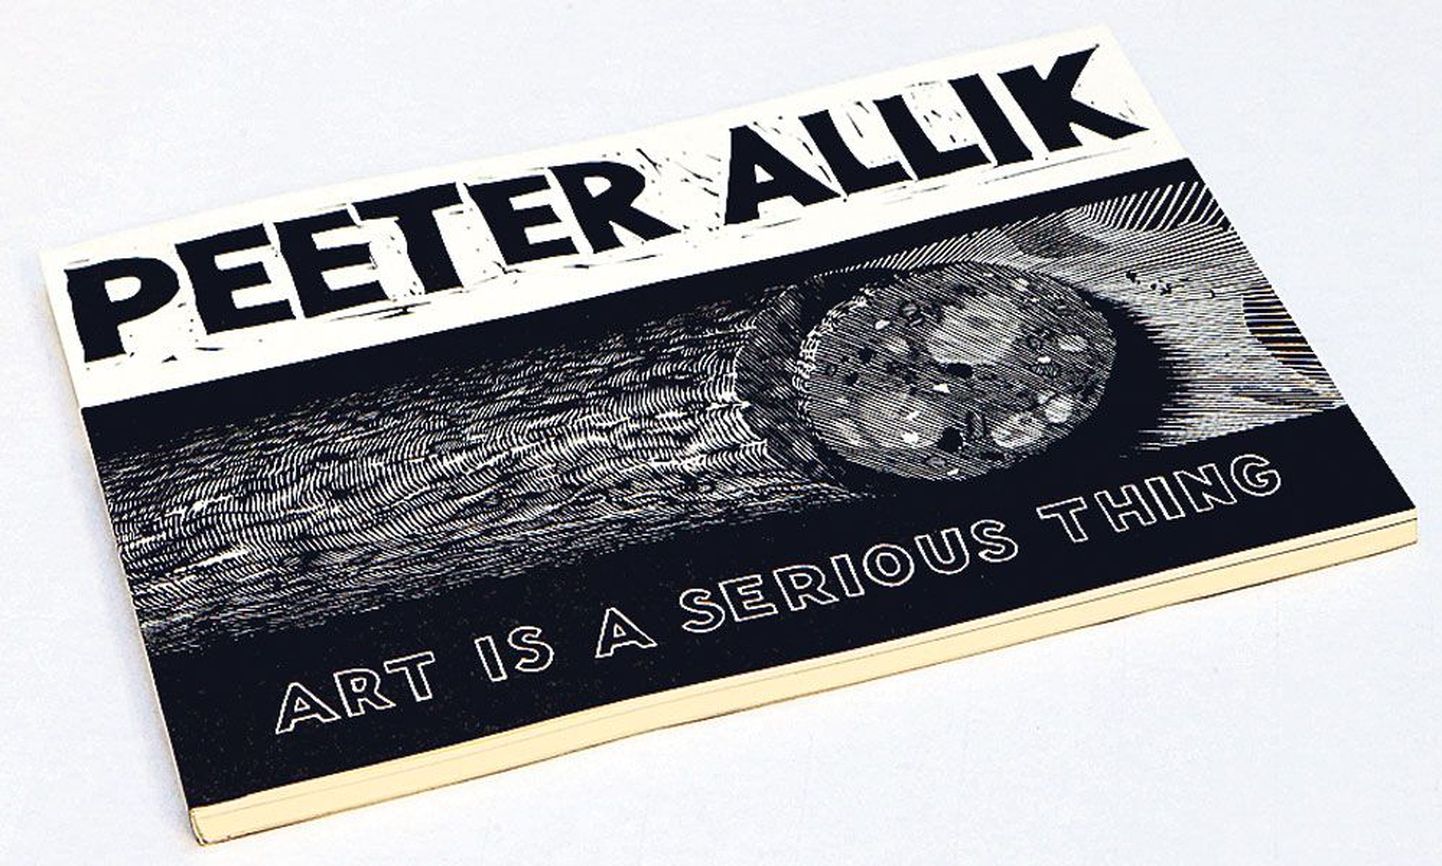 Peeter Alliku graafikaloomingut tutvustavasse raamatusse «Art is a serious thing» mõõtmetega 21 x 14,7 cm on koondatud suurem osa tema suuremõõtmelisest graafikast.